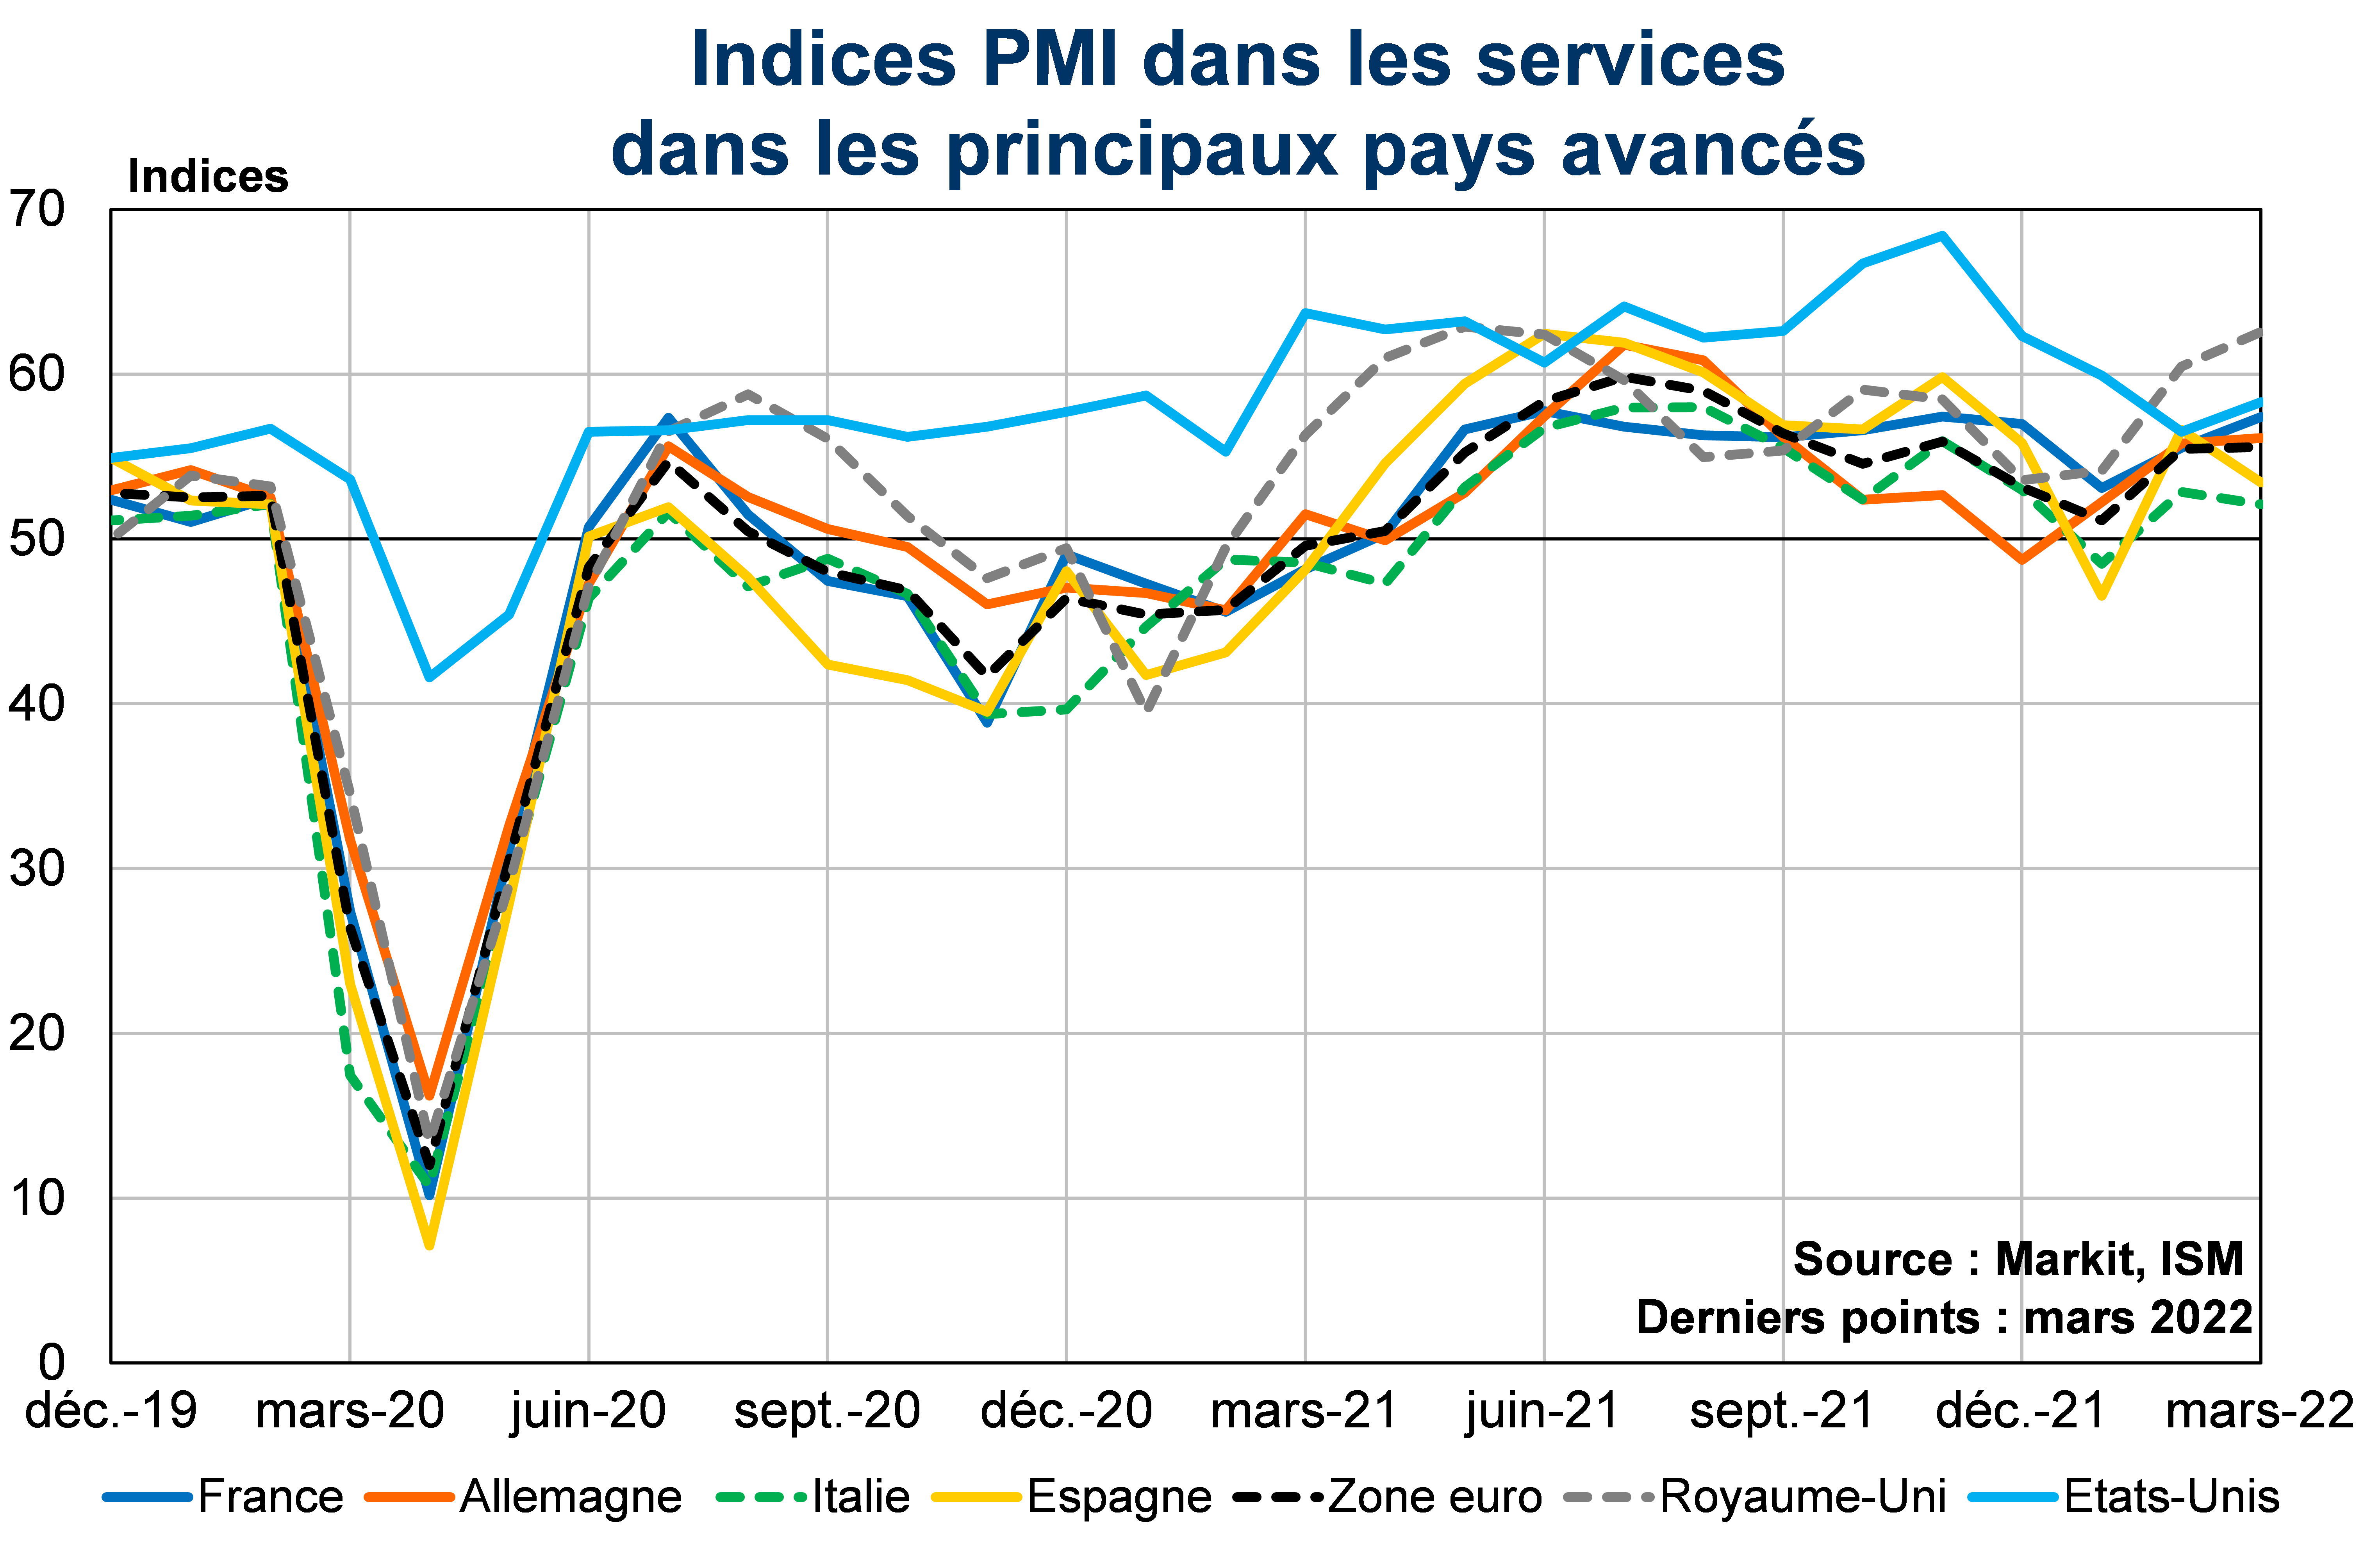 Indices PMI dans les services dans les principaux pays avancés